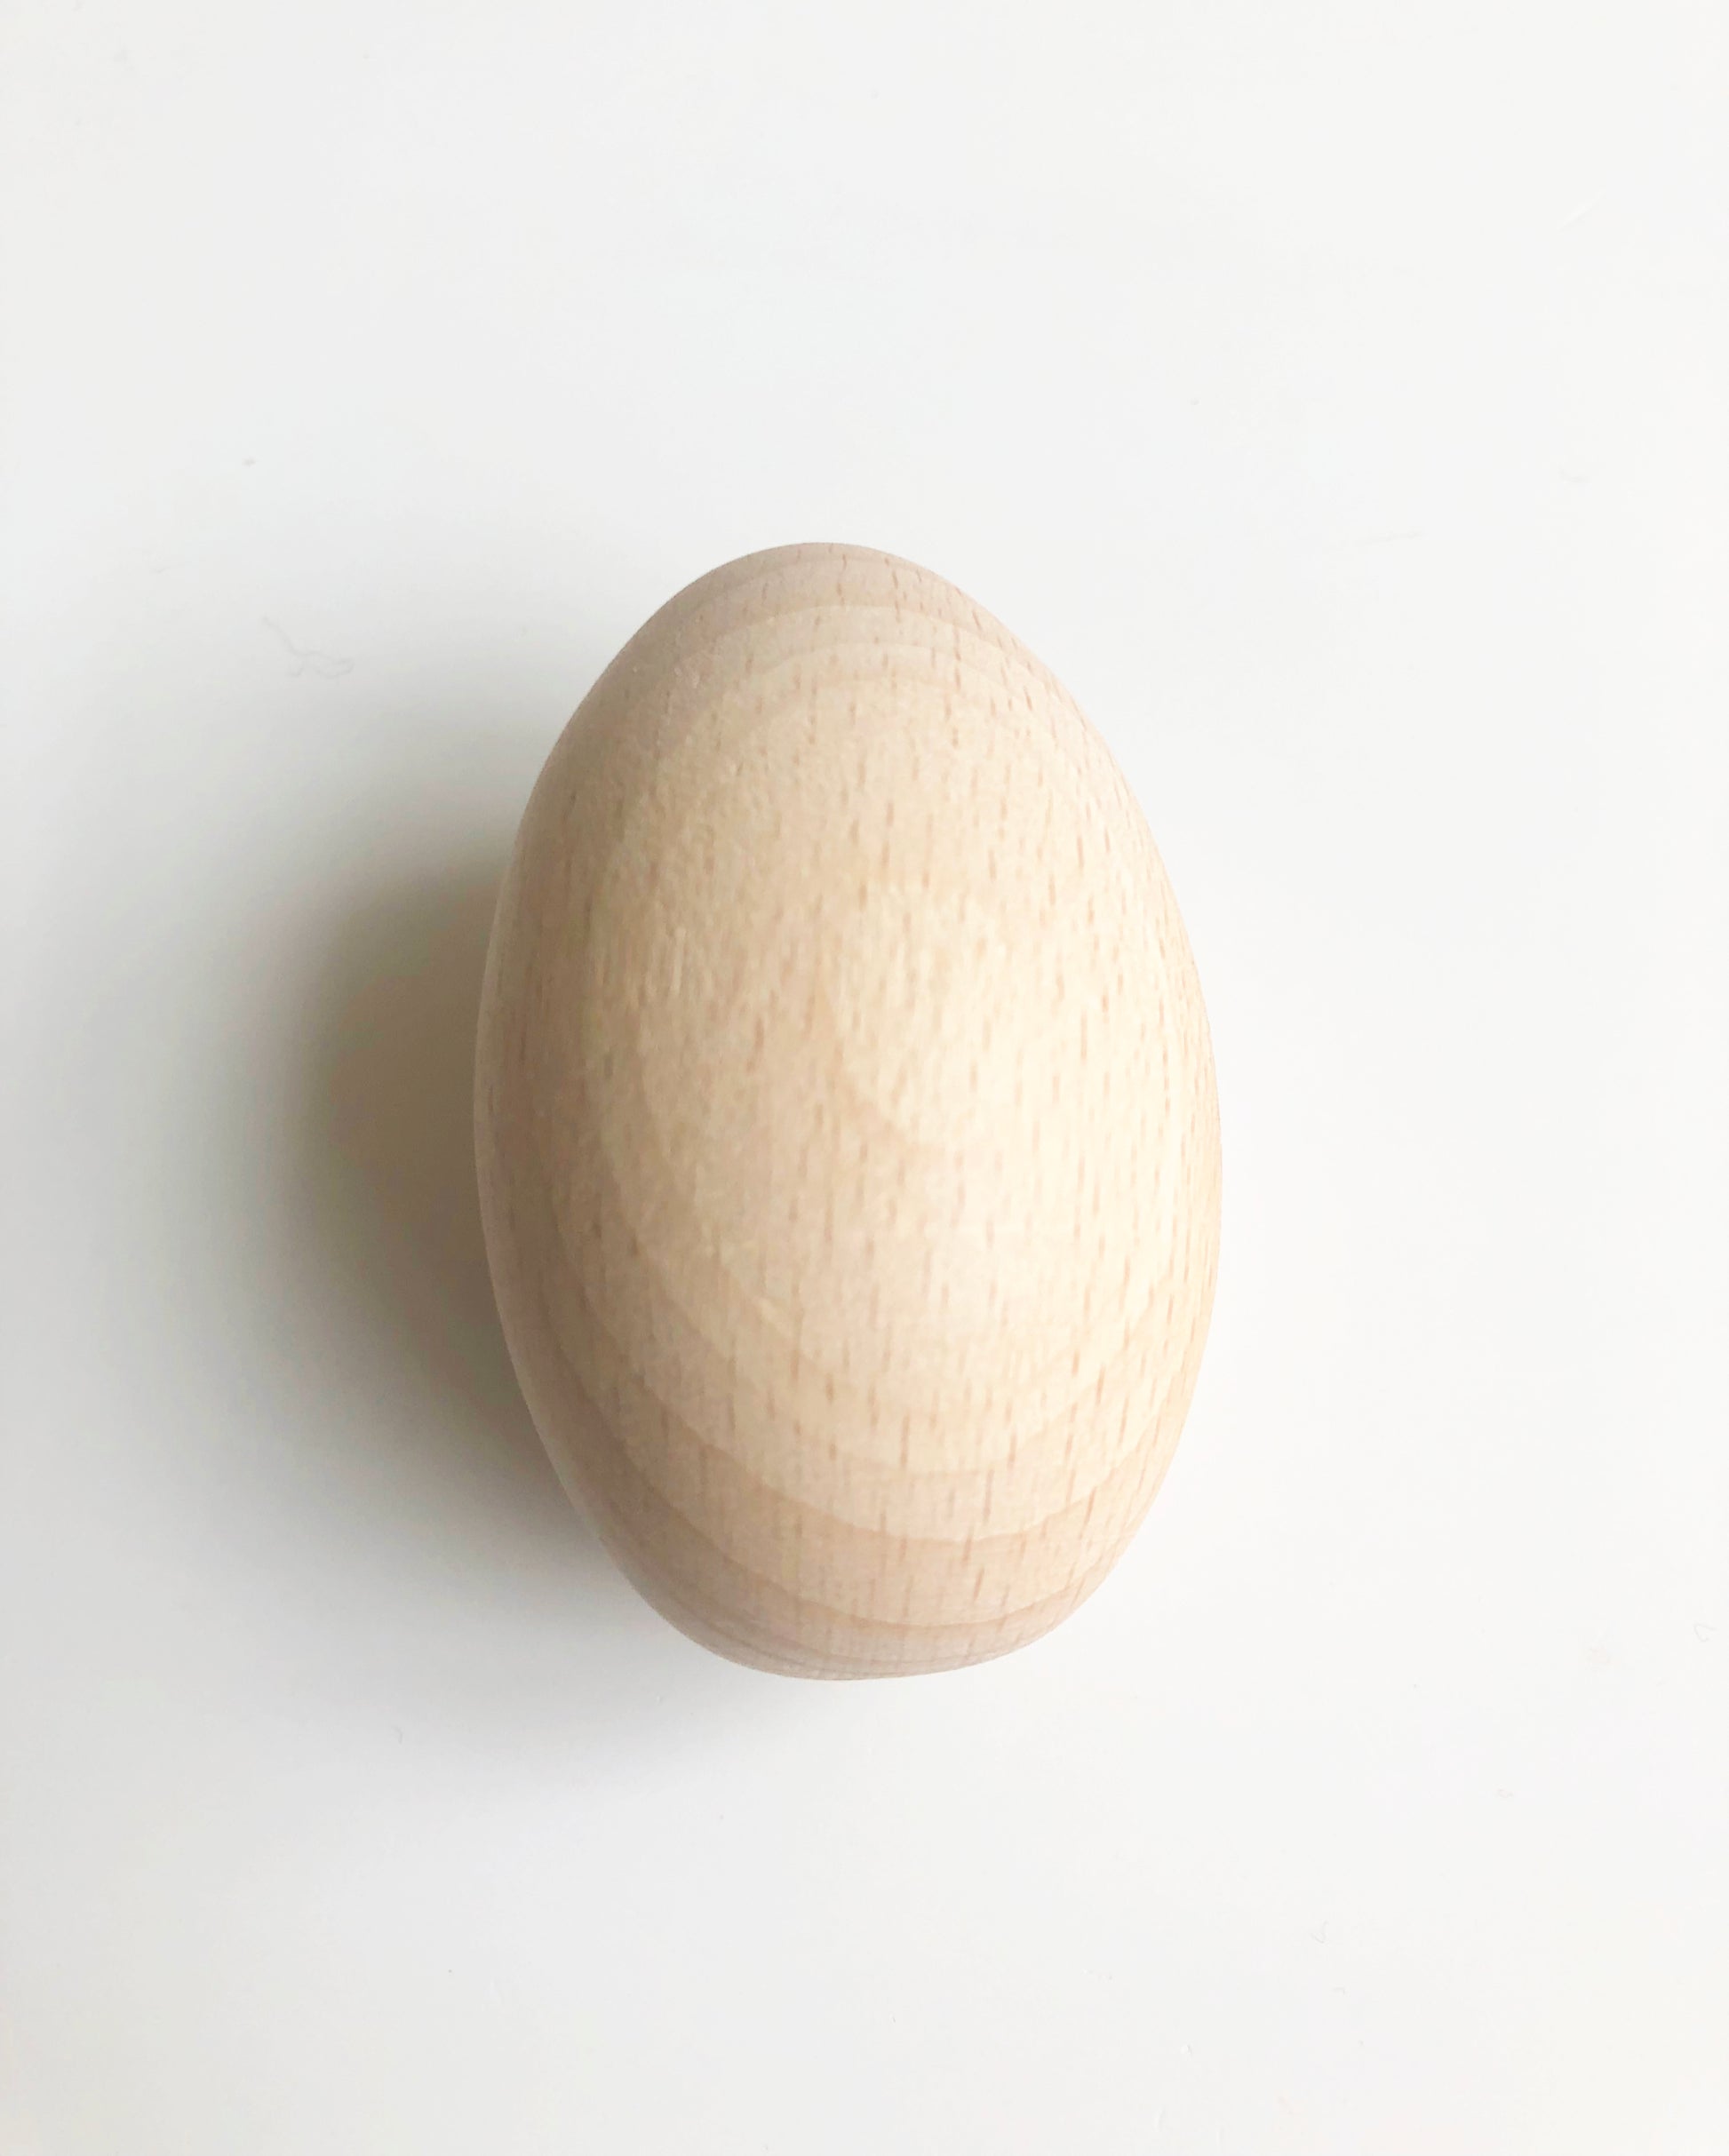 Darning Egg Kit Darning For Socks Wood Darning Egg Wooden Darning